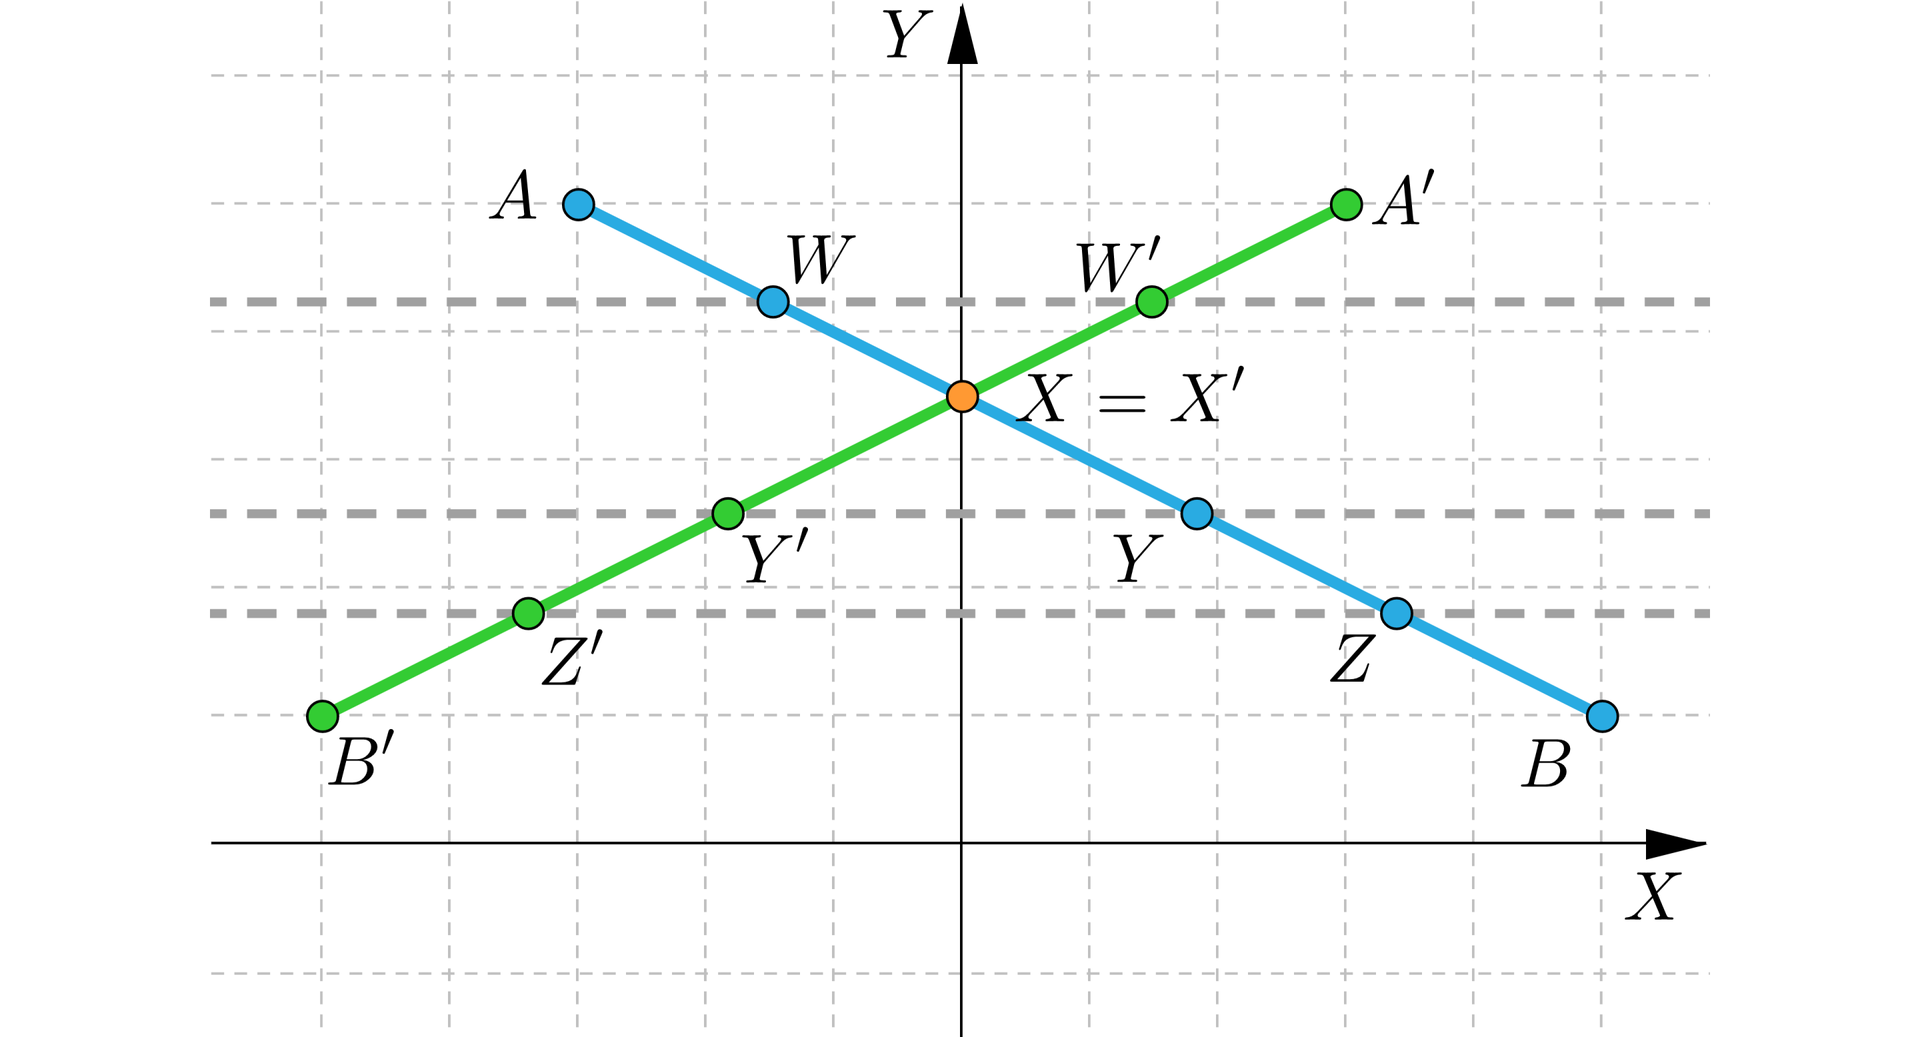 Grafika przedstawia poziomą oś x i pionową oś y. Na płaszczyźnie w drugiej ćwiartce znajdują się punkty A oraz W, a w pierwszej ćwiartce są punkty Y, Z oraz B. Na osi y powyżej osi x znajduje się punkt X. Punkty te zostały połączone niebieską linią. Przez punkt W, Y oraz Z poprowadzone zostały linią przerywaną poziome linie równoległe do osi x. Na linii, na której znajduje się punkt W w pierwszej ćwiartce znalazł się punkt W prim. Na linii, na której znajduje się punkt Y w pierwszej ćwiartce znajduje się punkt Y prim. Na linii, na której znajduje się punkt Z w pierwszej ćwiartce znajduje się punkt Z prim. Przez punkty oznaczone primem narysowano linię w kolorze zielonym. Na krańcach tej linii dorysowano punkty A prim i B prim, na takiej samej zasadzie jak pozostałe punkty. Linie przecinają się w punkcie X, który jest równy punktowi X prim.